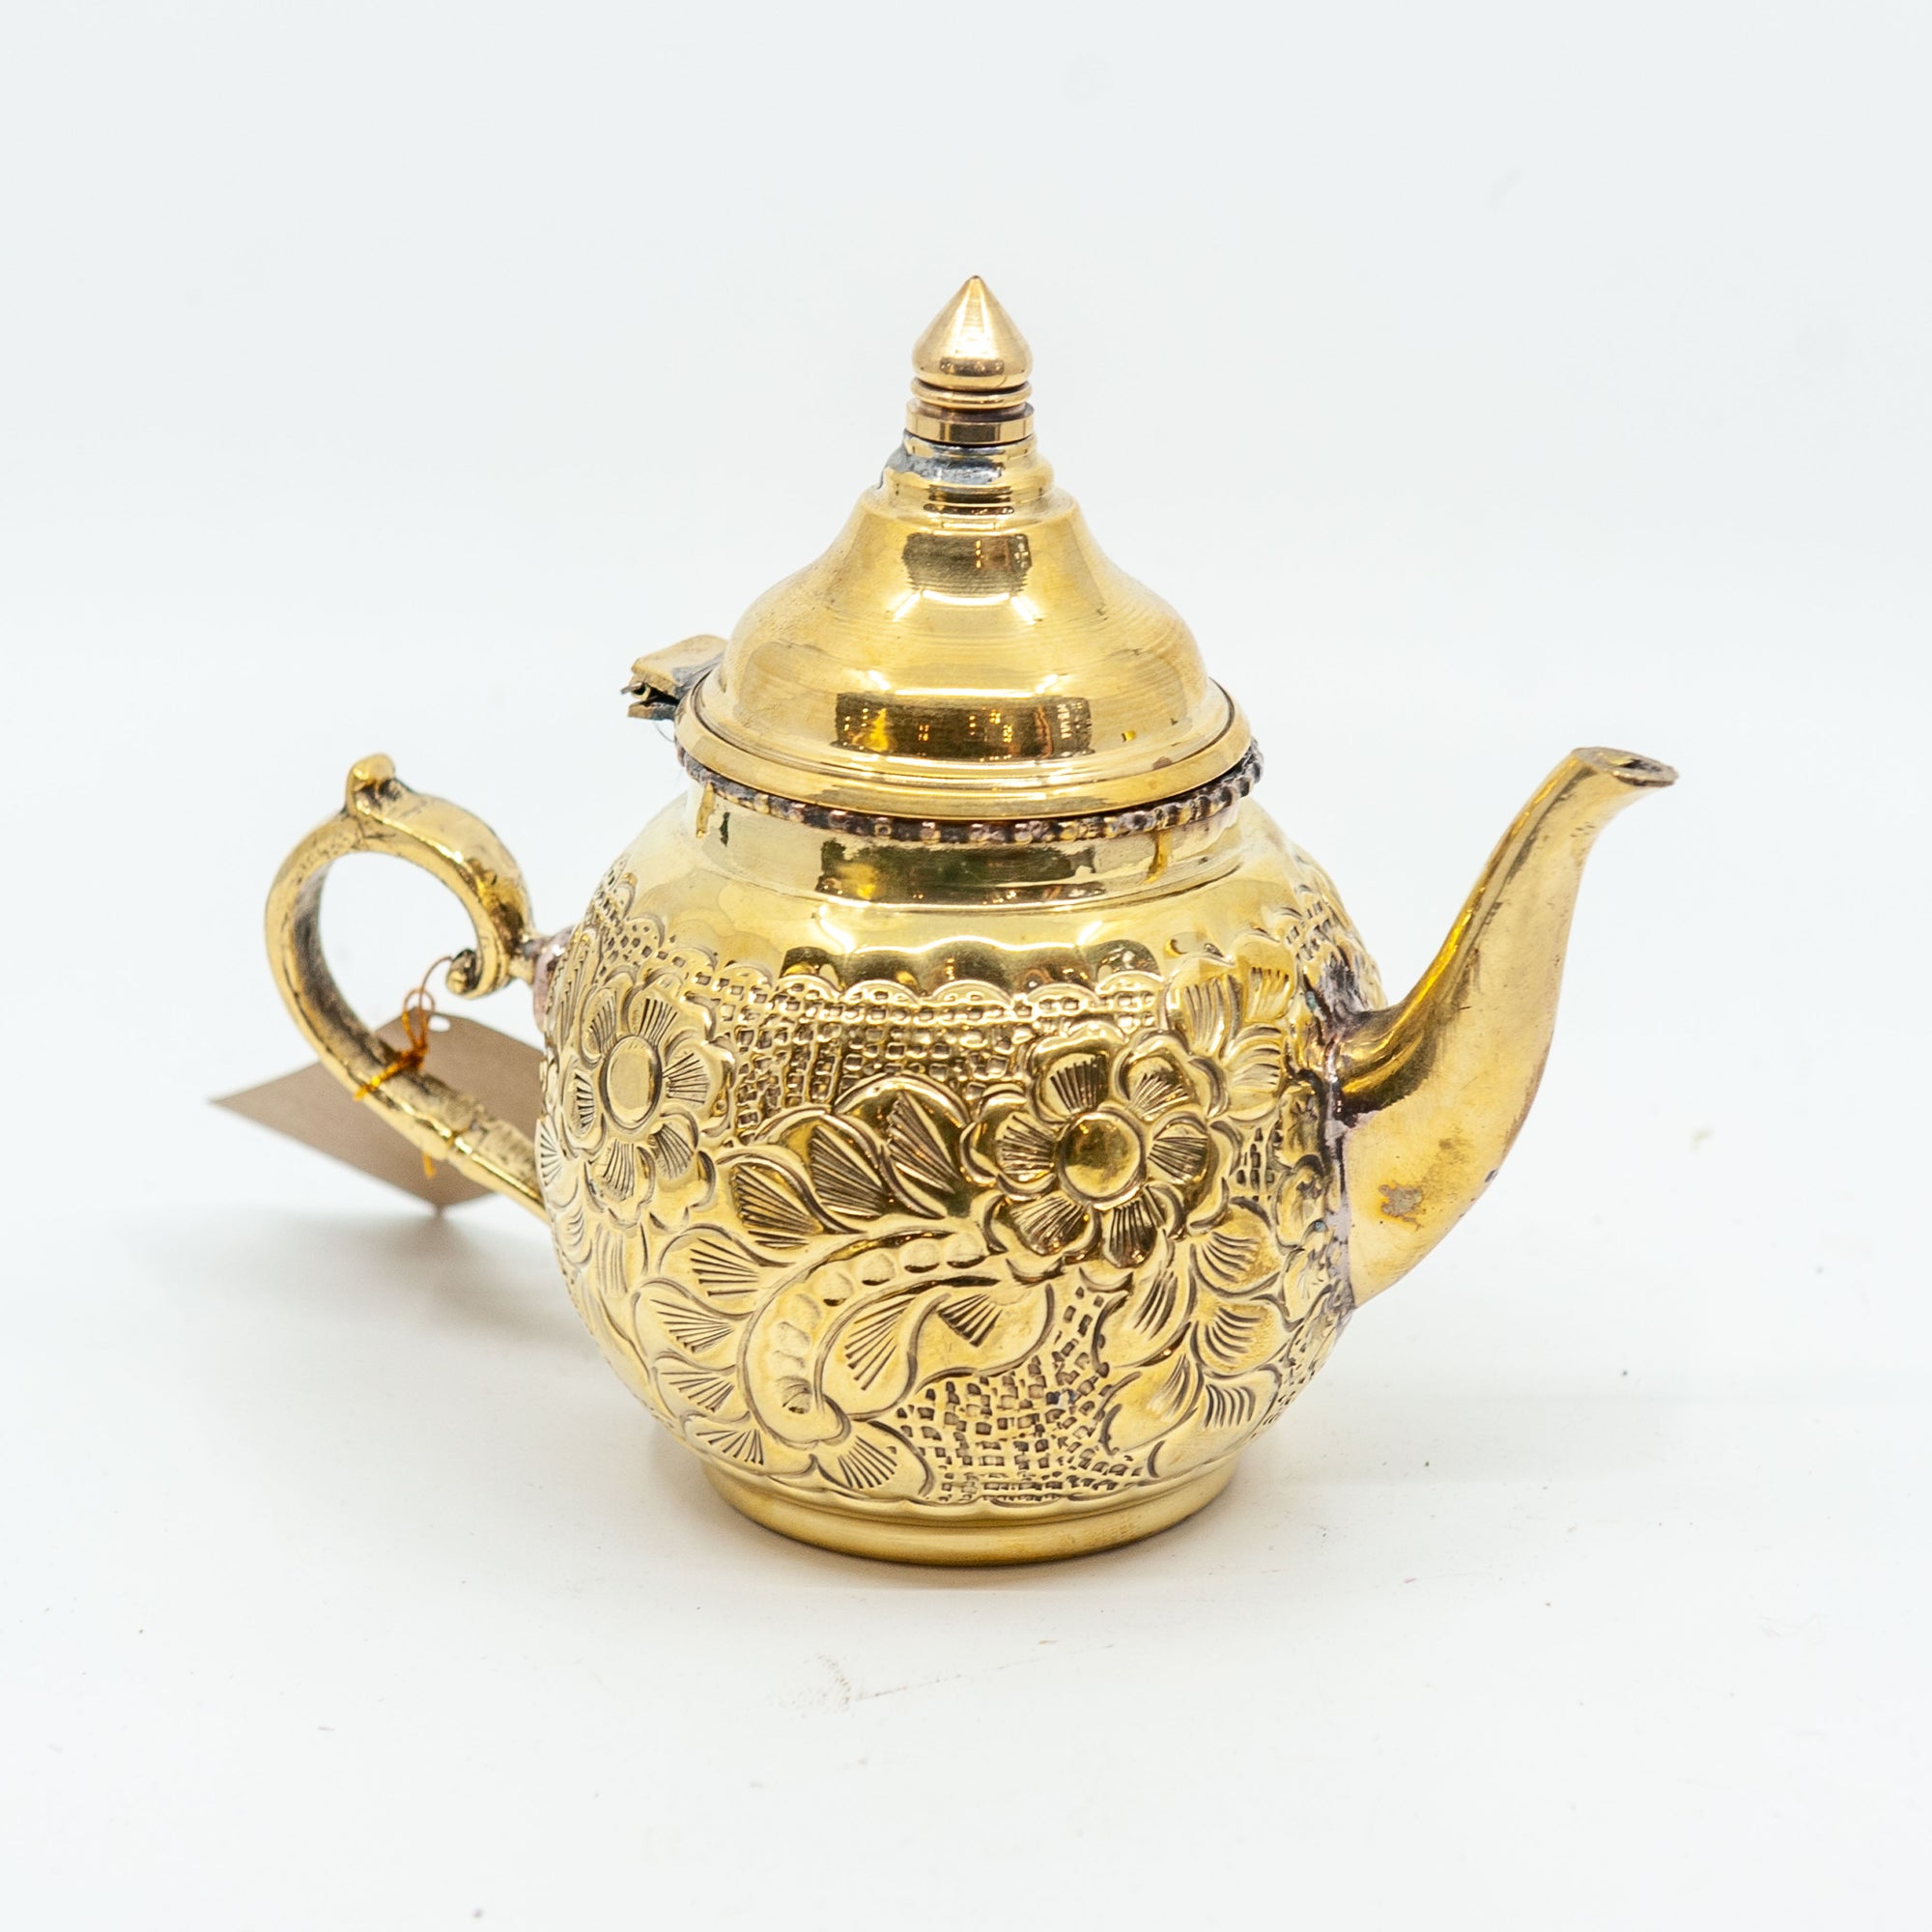 Egyptian Ornate Brass Teapot - Short